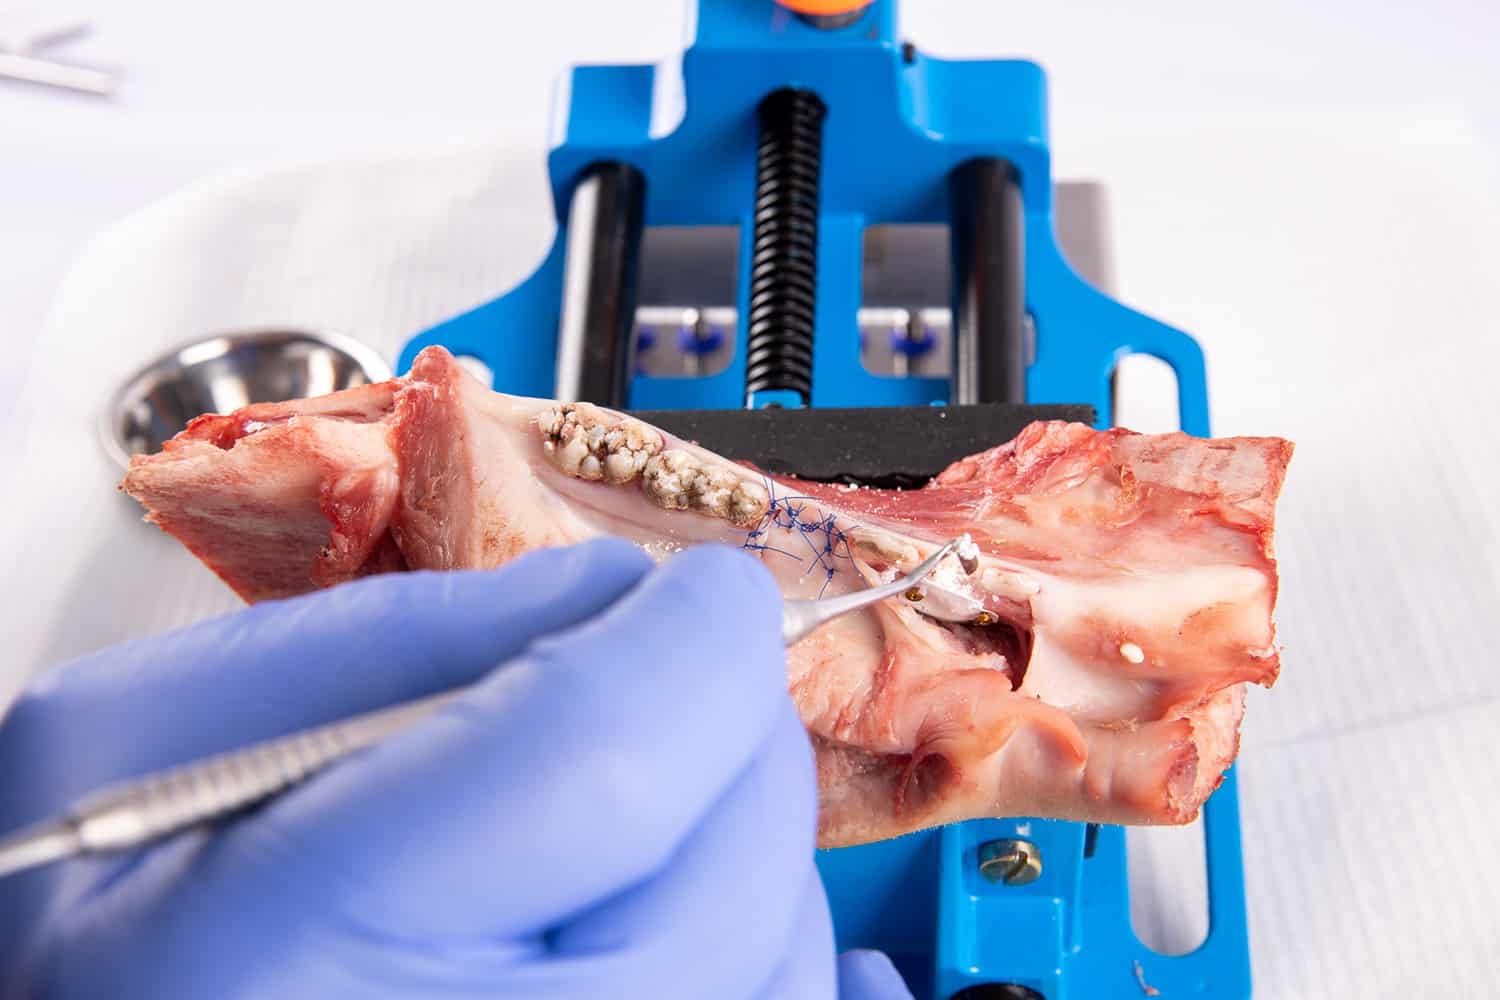 Cursus Botregeneratie en kaakreconstructie voor implantologie | Implant College 03